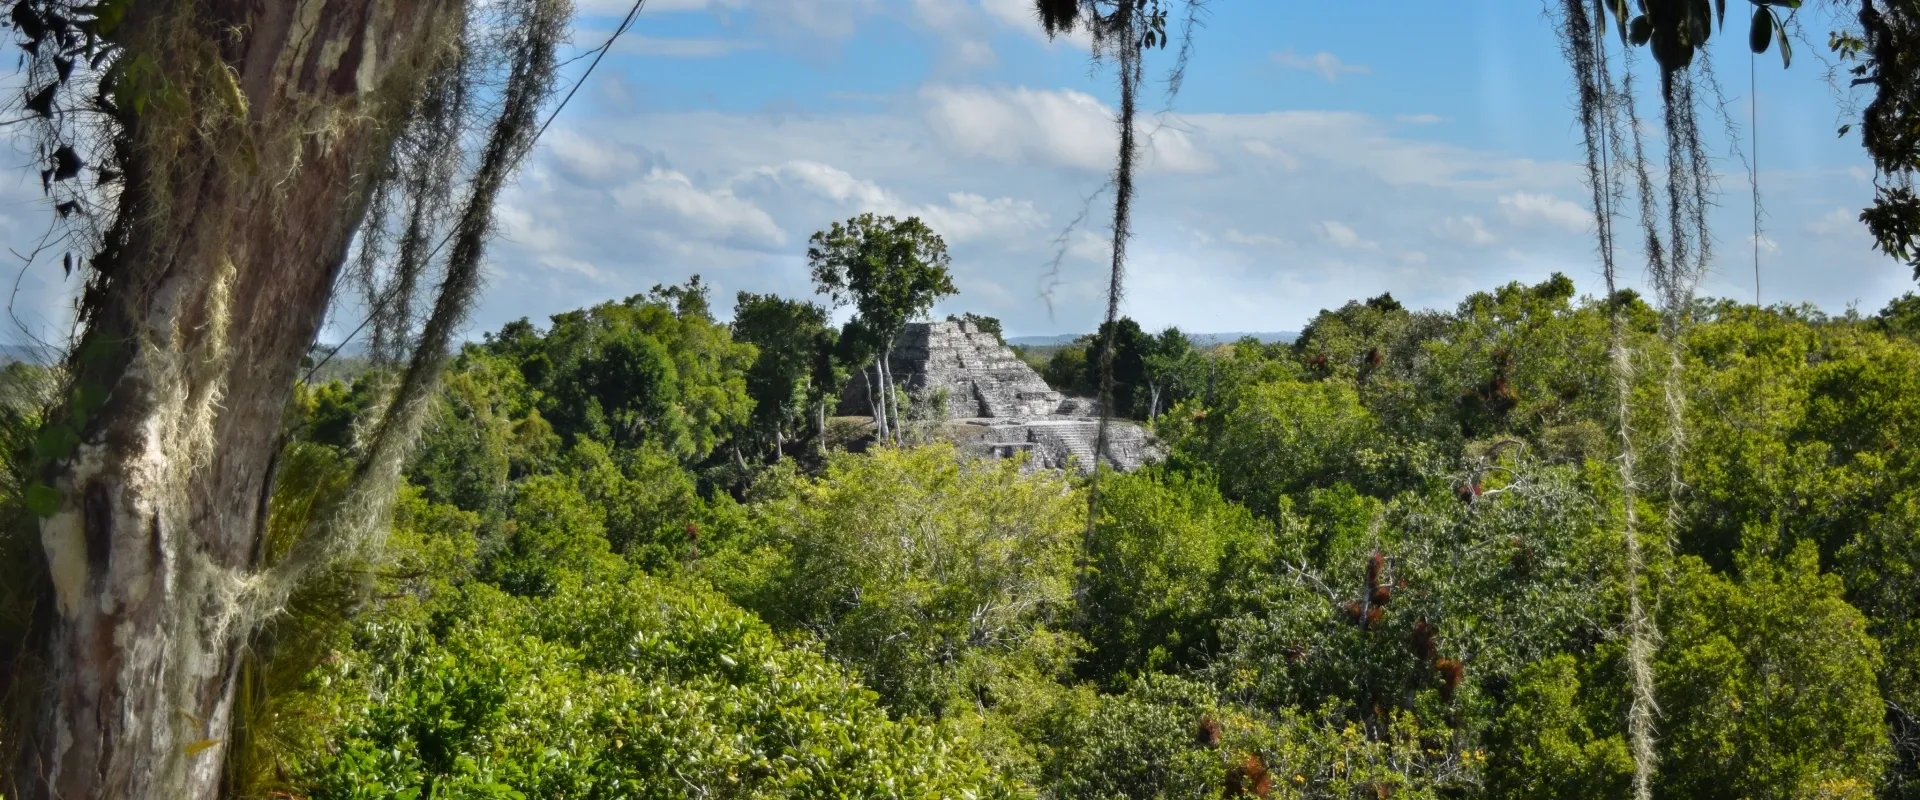 View of El Mirador in Guatemala